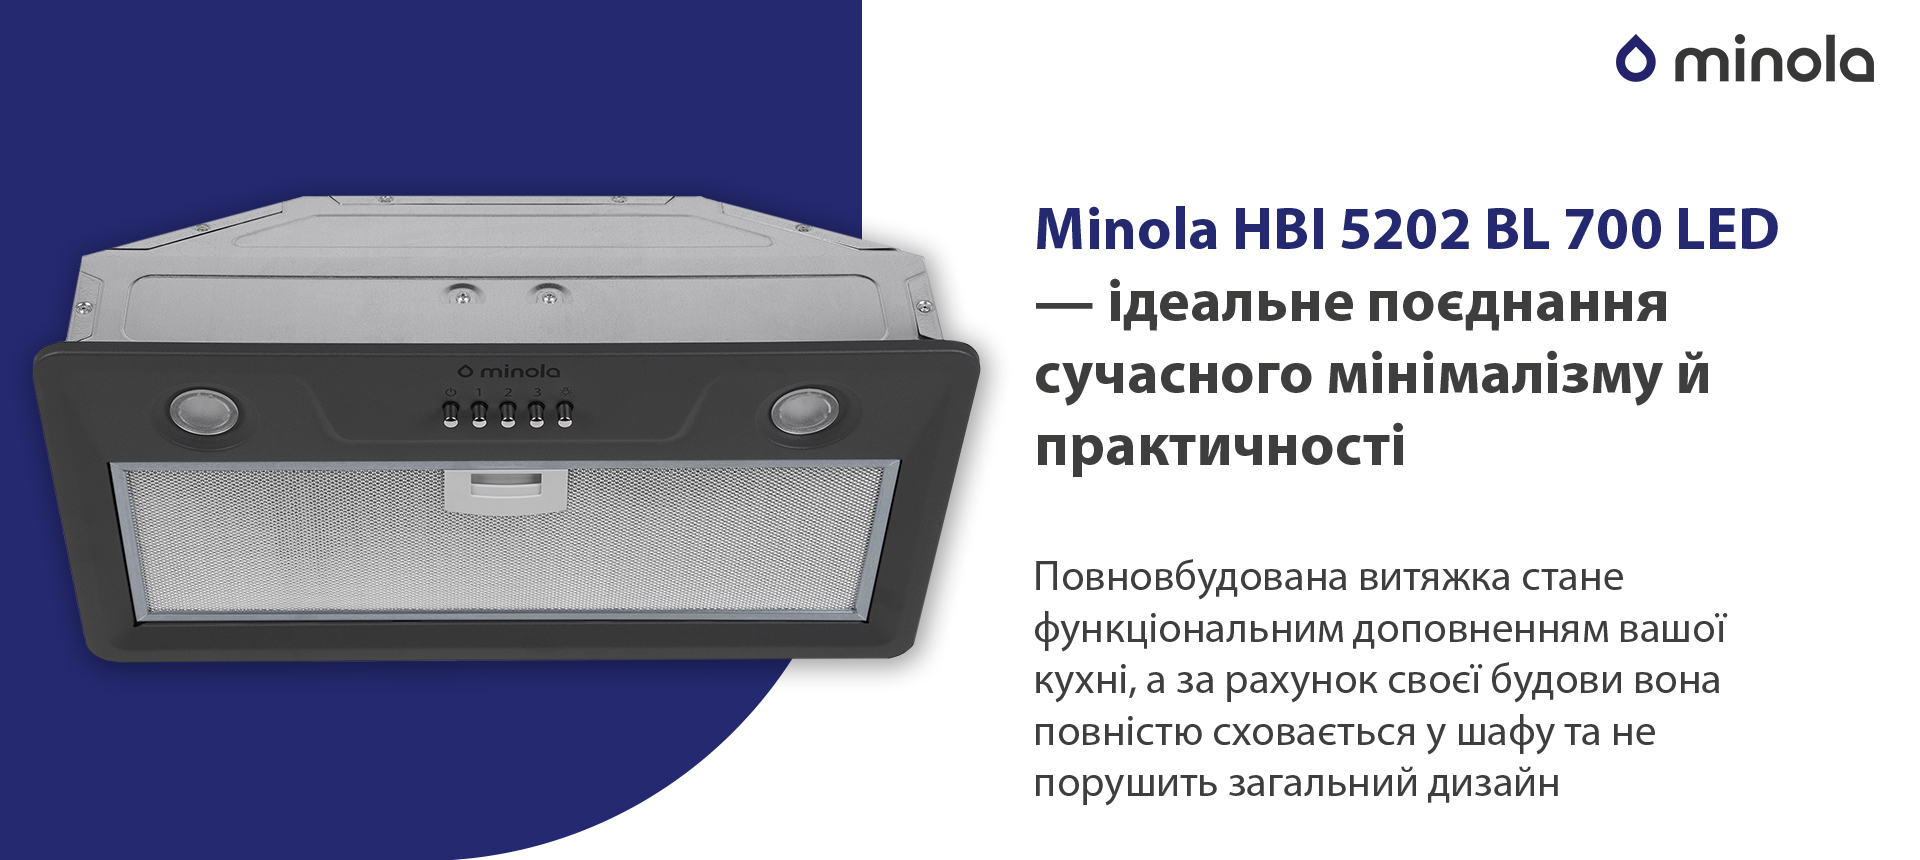 Minola HBI 5202 GR 700 LED в магазине в Киеве - фото 10